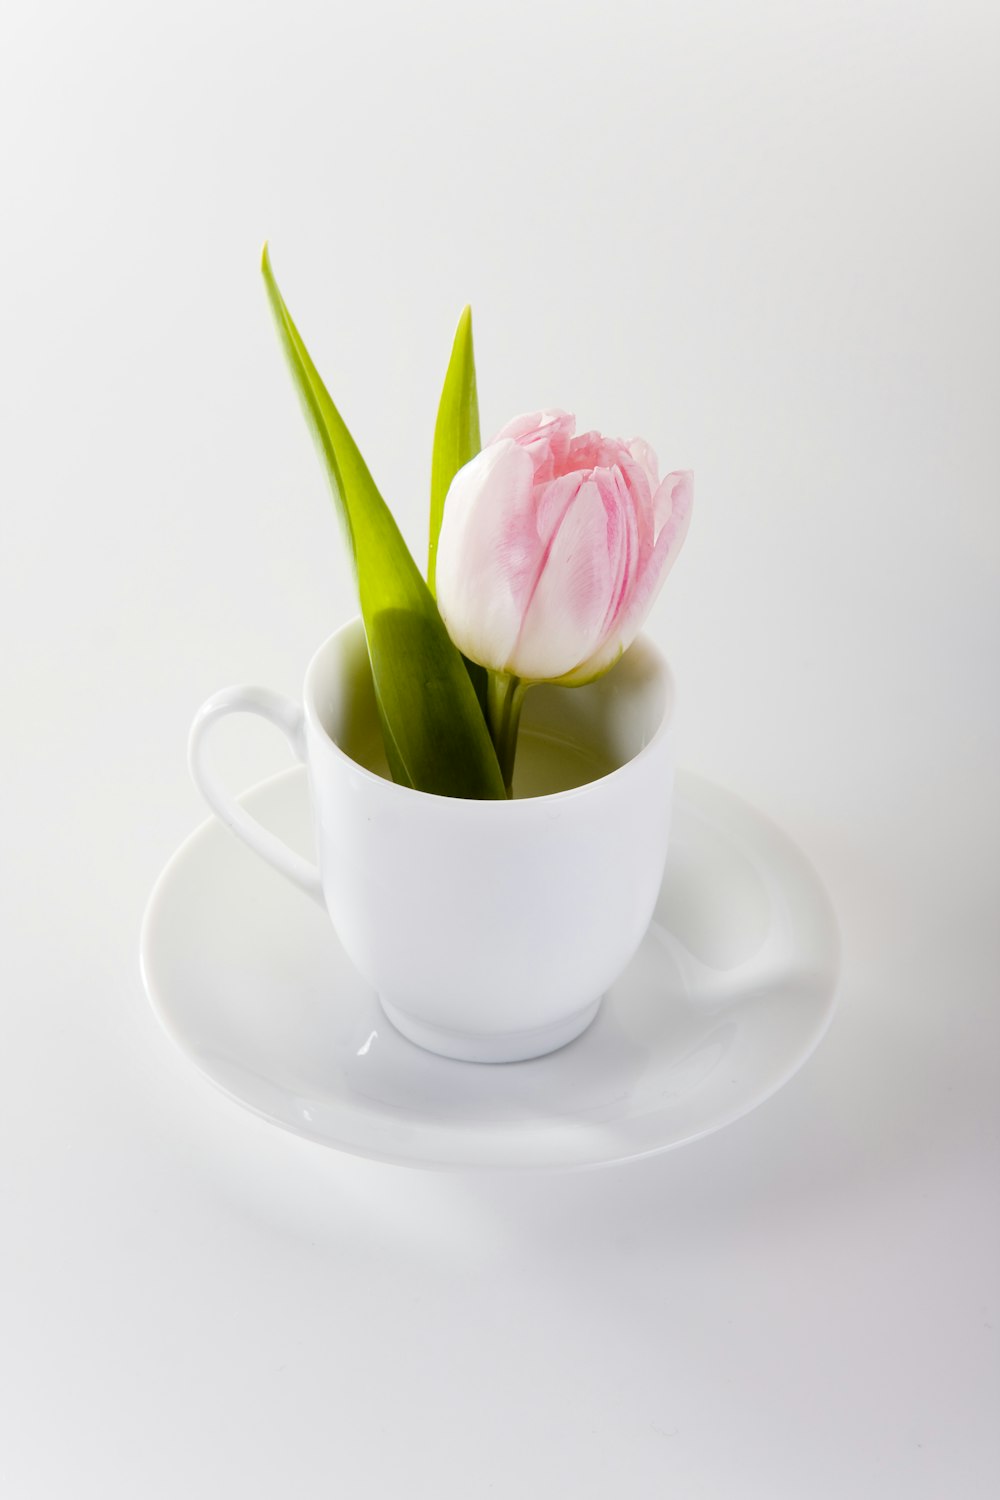 pink rose on white ceramic teacup